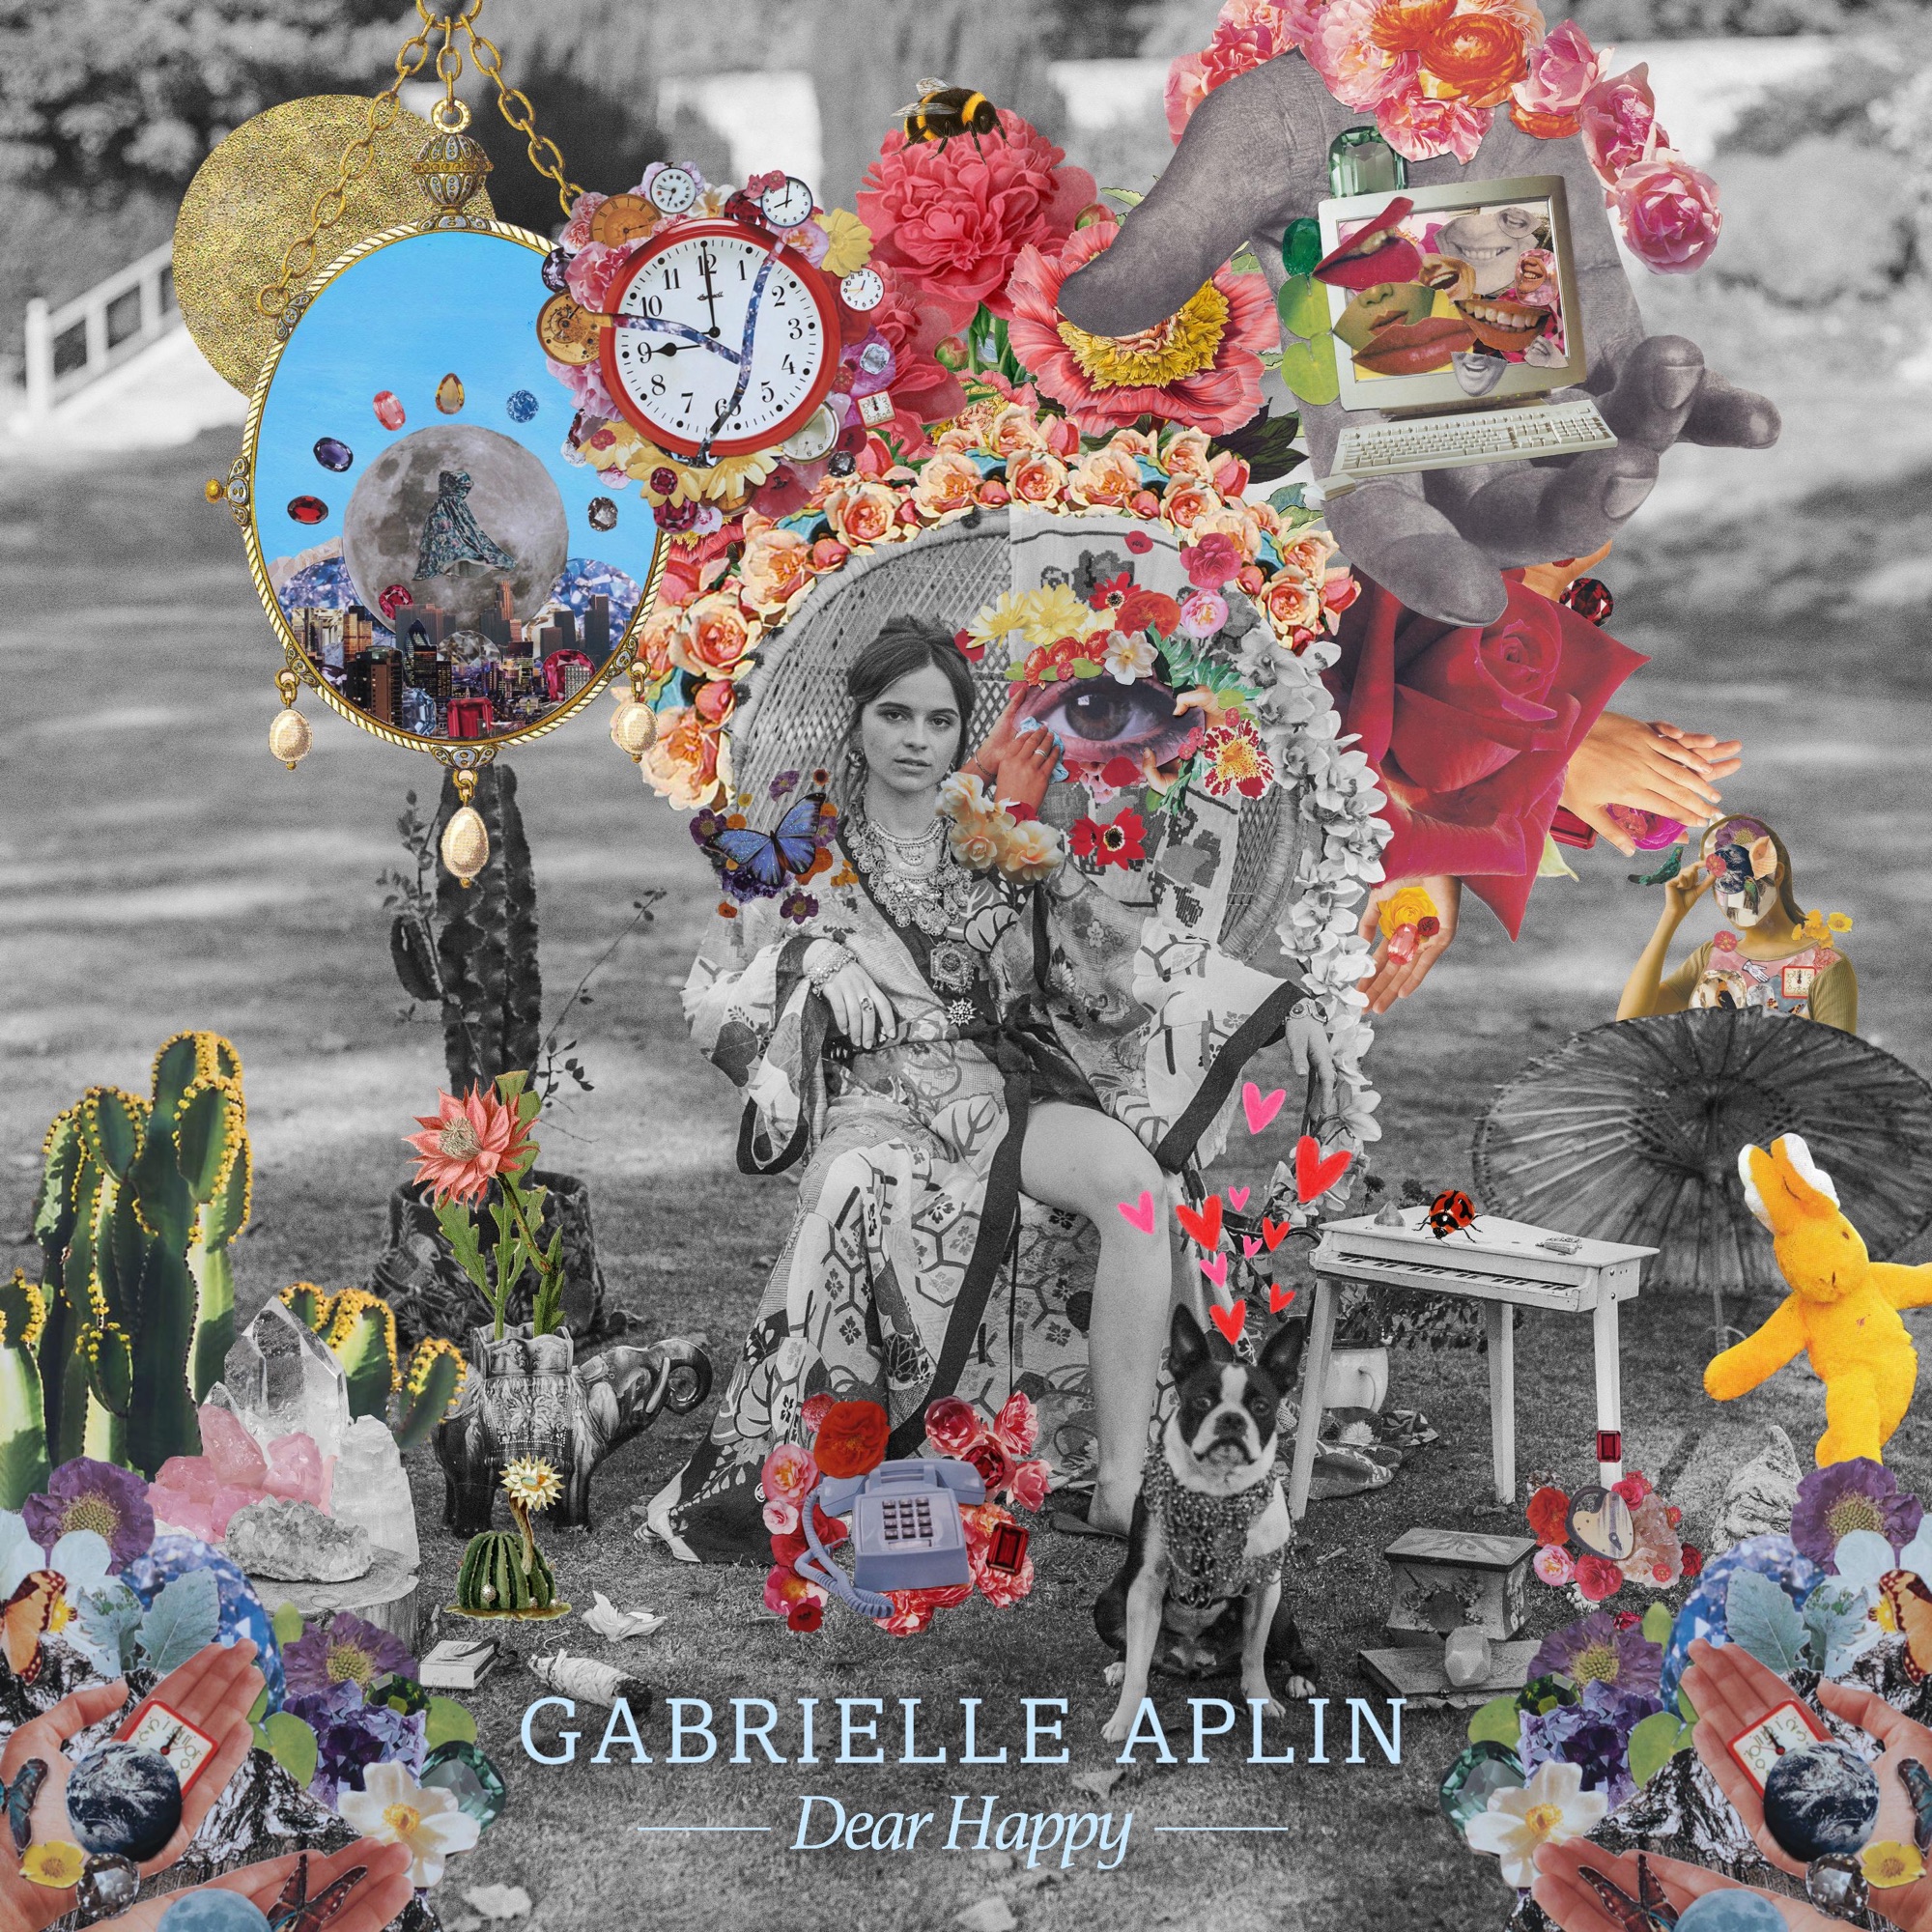 14|Gabrielle Aplin – Dear Happy